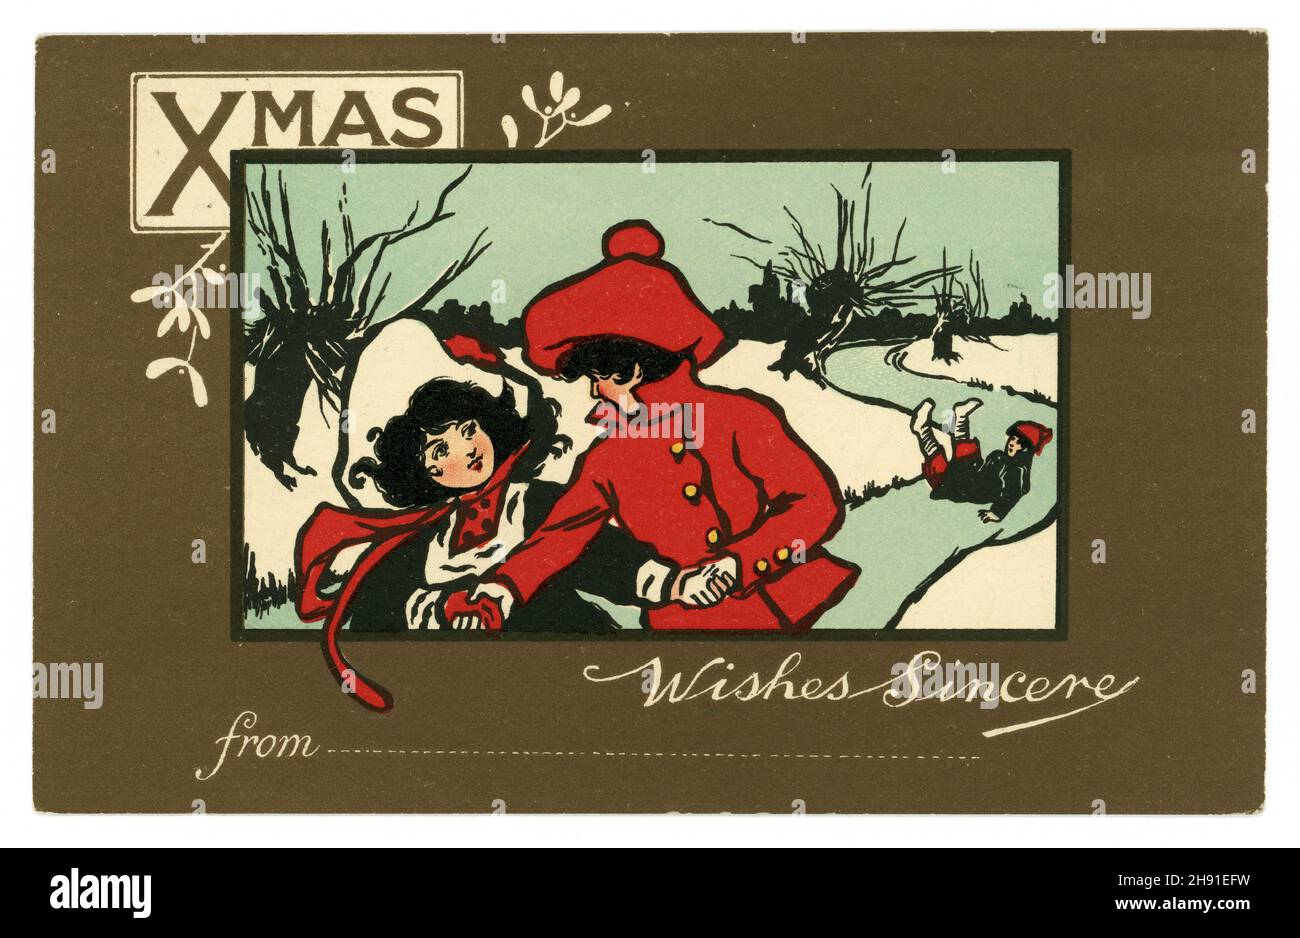 Original Edwardian Ära Postkarte Junge und Mädchen Eislaufen, Winterszene, möglicherweise von renommierten britischen Künstlerin Ethel Parkinson, die Nachricht ist Wünsche aufrichtig aus.. Mit einer Zeile, um Ihren Namen zu setzen, veröffentlicht 24 Dezember 1906, U.K. Stockfoto